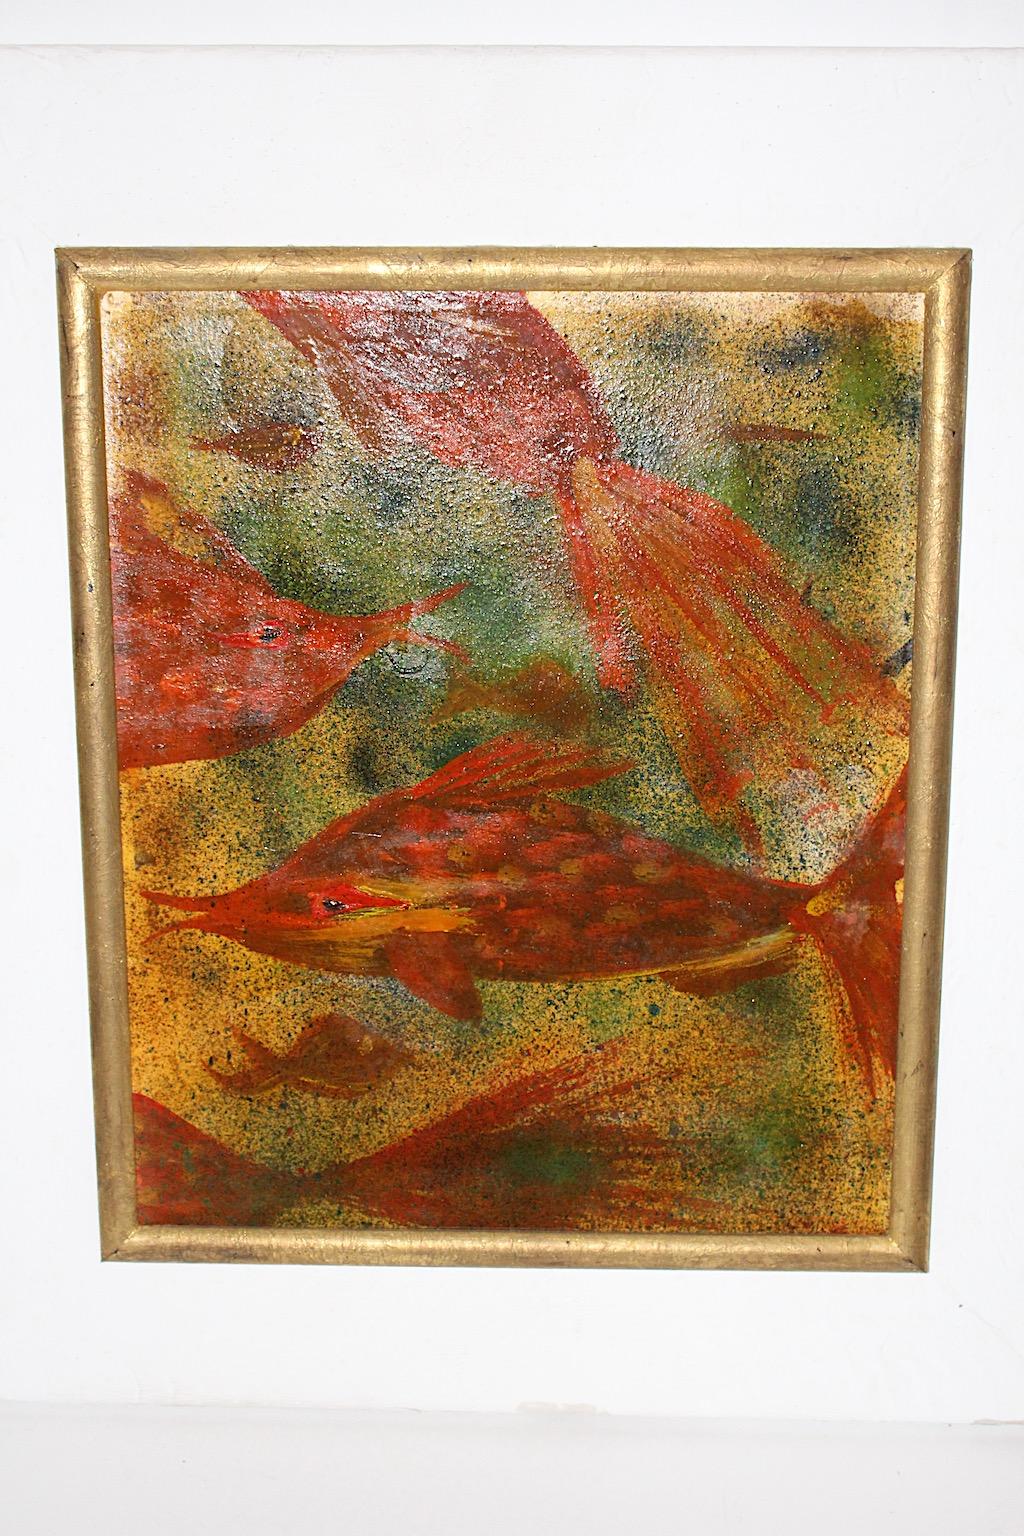 Mid Century Modern Vintage Gemälde Tiermotiv Fische von Robert Libeski 1946 Wien.
Ein erstaunliches Gemälde mit einem Motiv, das aussieht, als befände sich der Maler inmitten eines Meeres, umgeben von Fischen und Sonnenstrahlen.
Dieses Gemälde zeigt